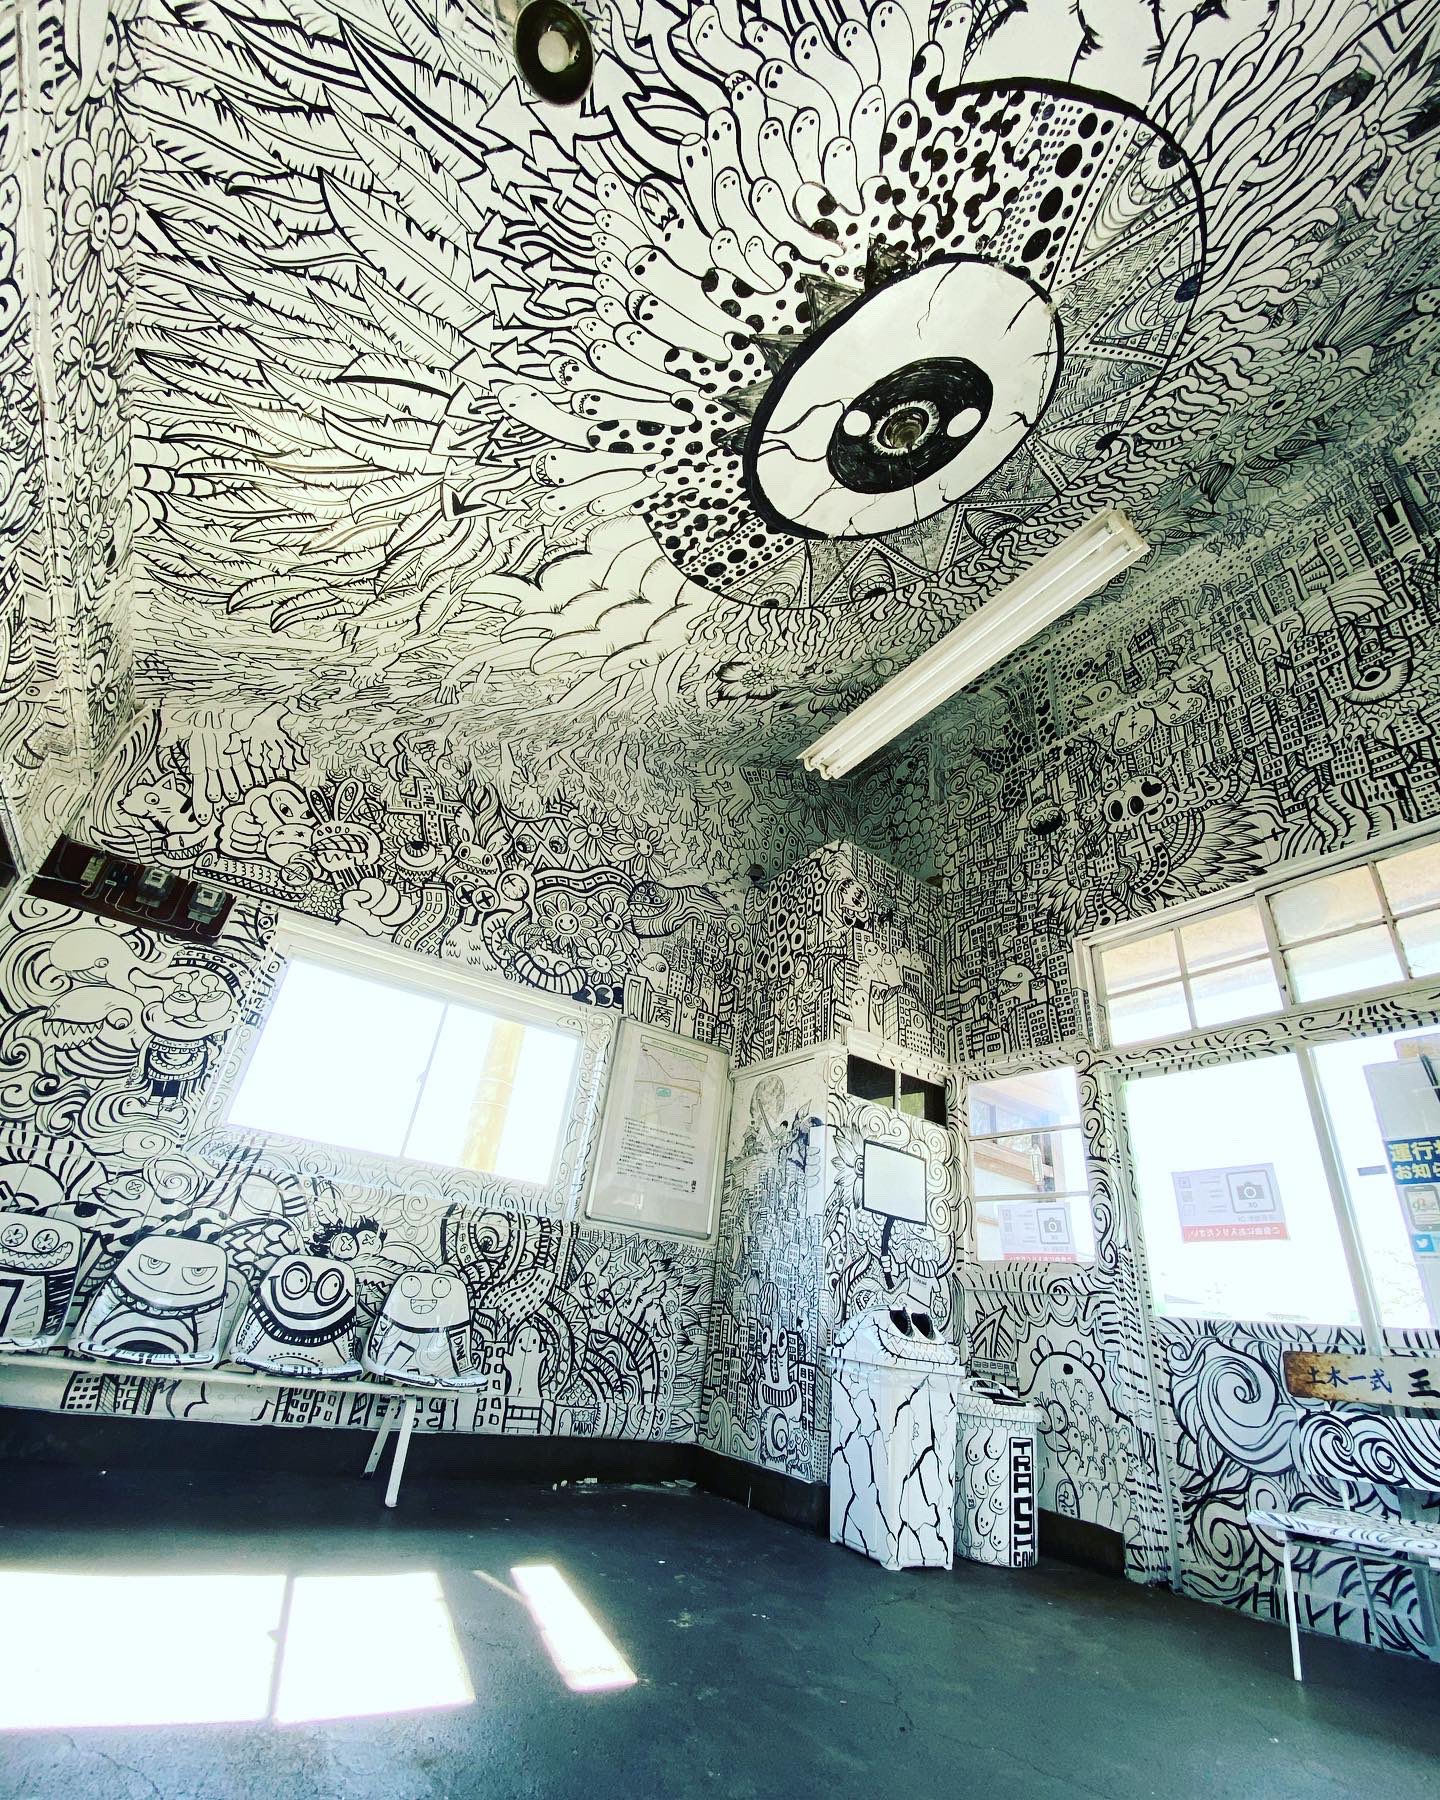 ศิลปิน Goma เนรมิตรภายในสถานีรถไฟเก่าแก่ Inakadate อายุกว่า 70 ปีในญี่ปุ่นให้สวยสะพรึง